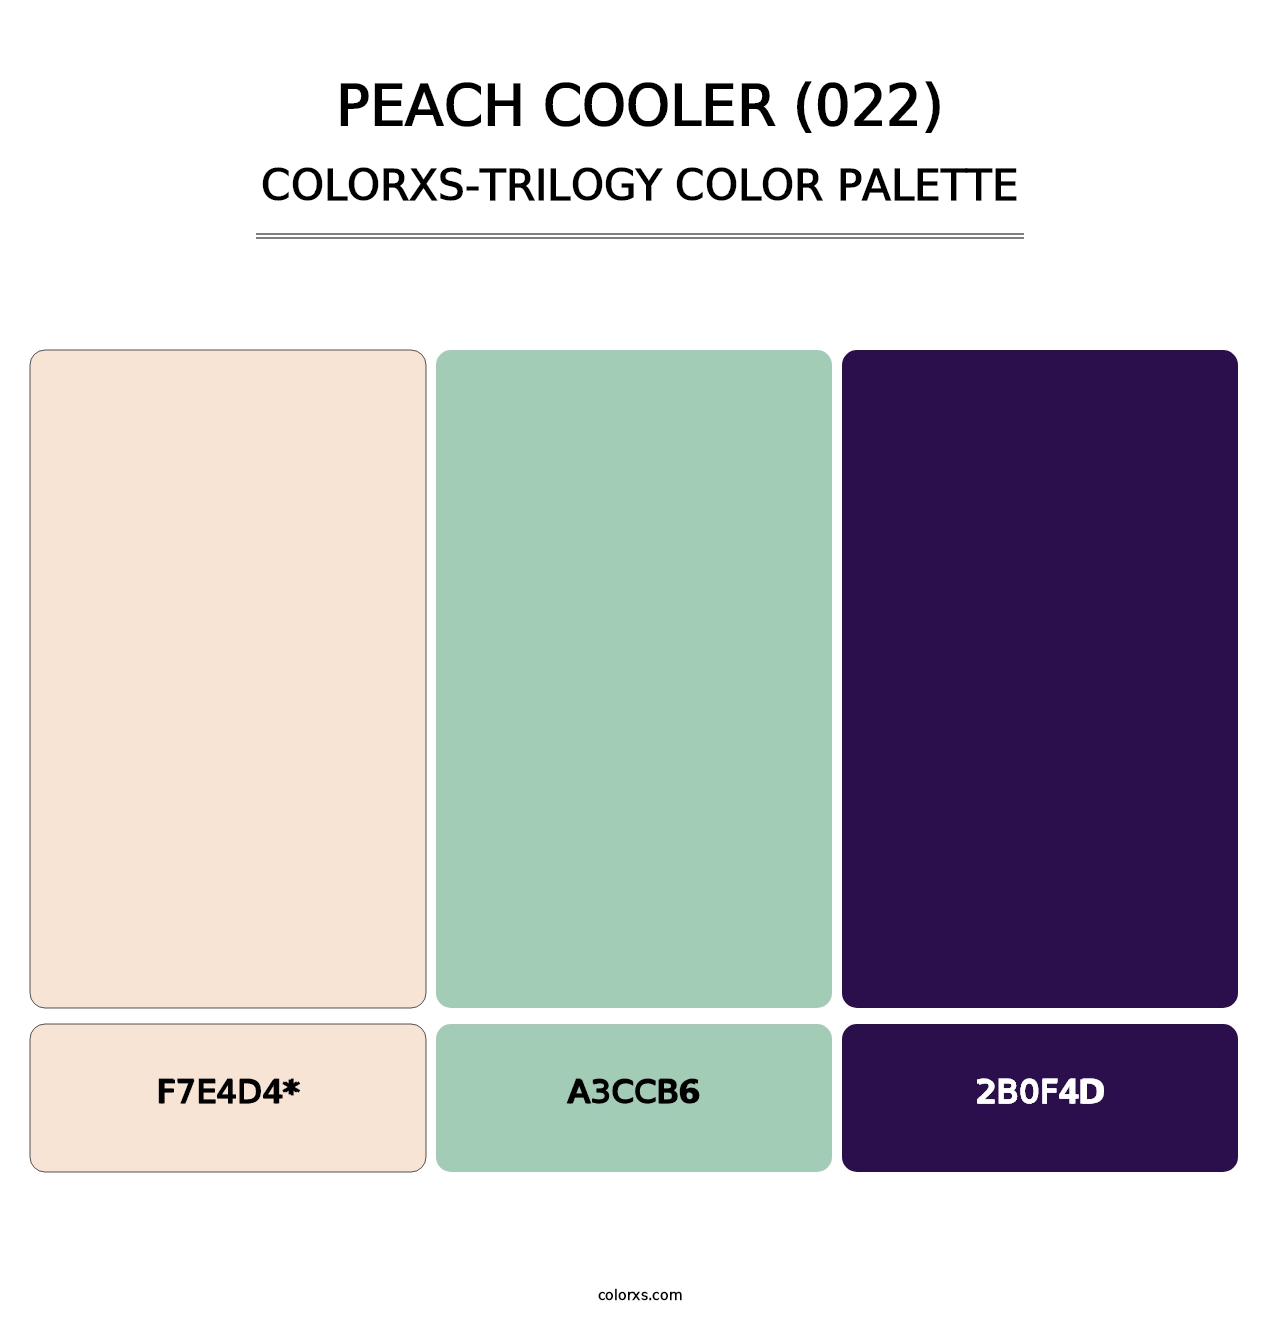 Peach Cooler (022) - Colorxs Trilogy Palette